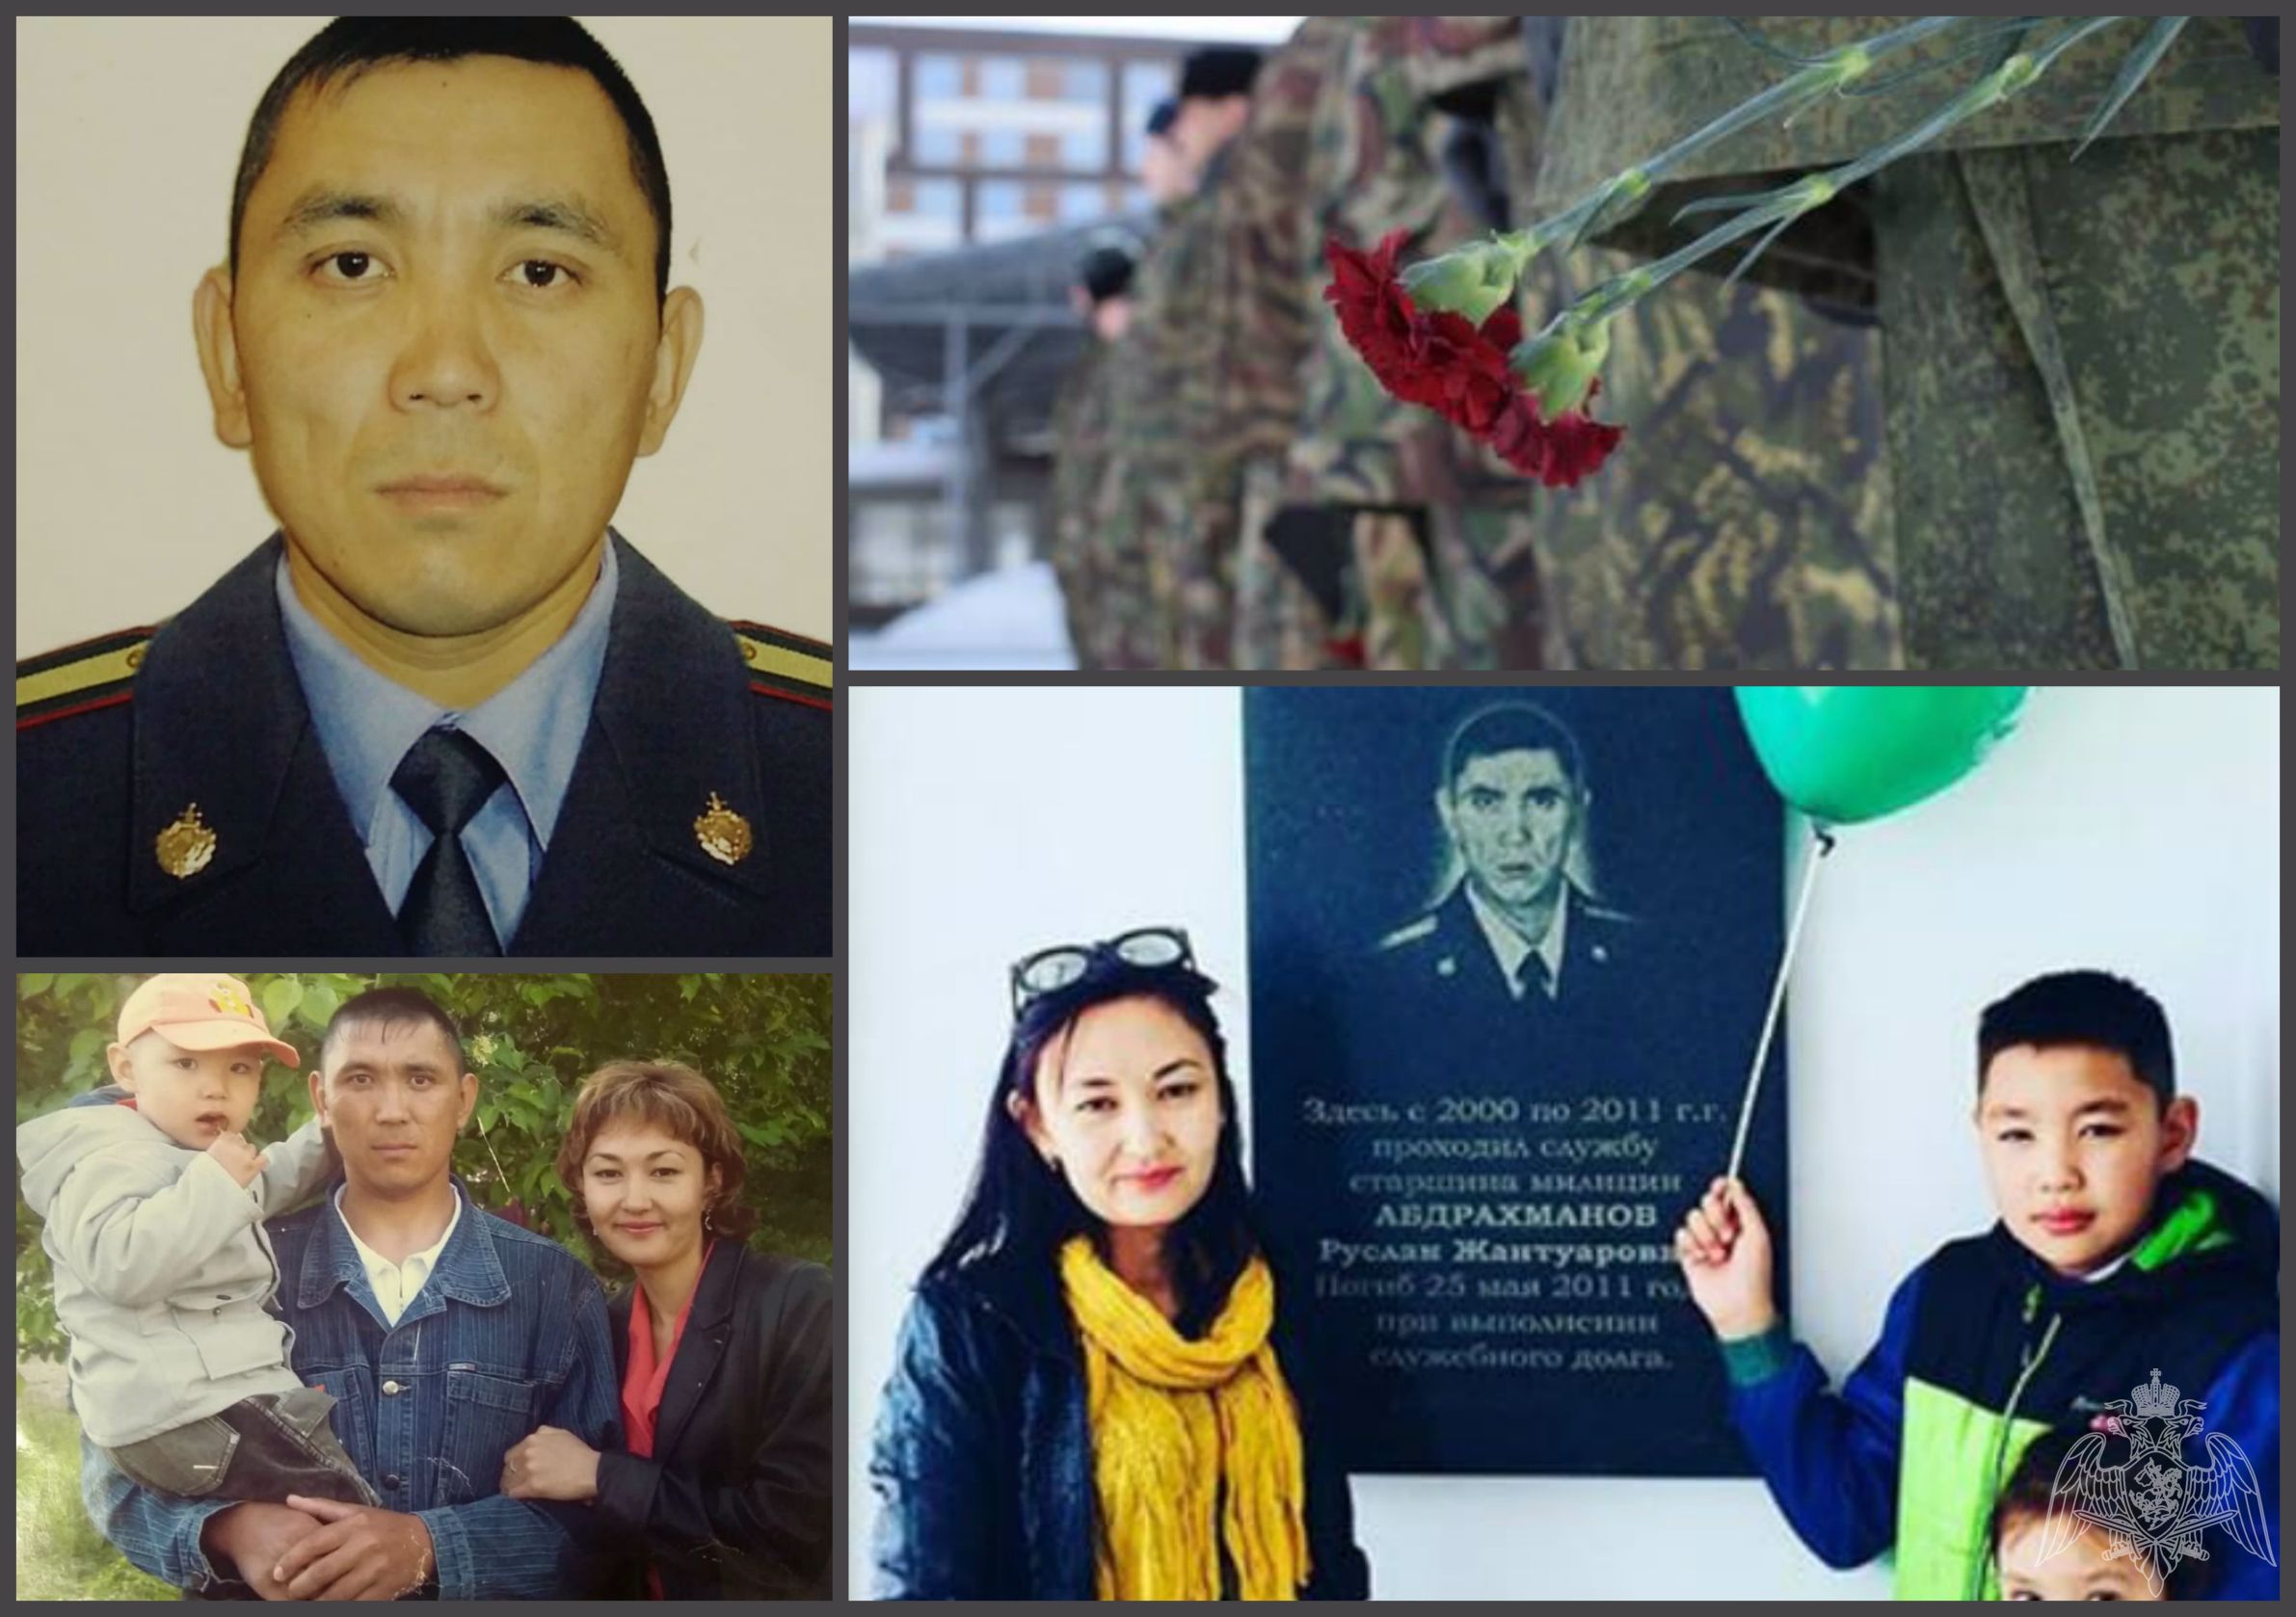 25 мая день памяти сотрудника отдела вневедомственной охраны Руслана Абдрахманова